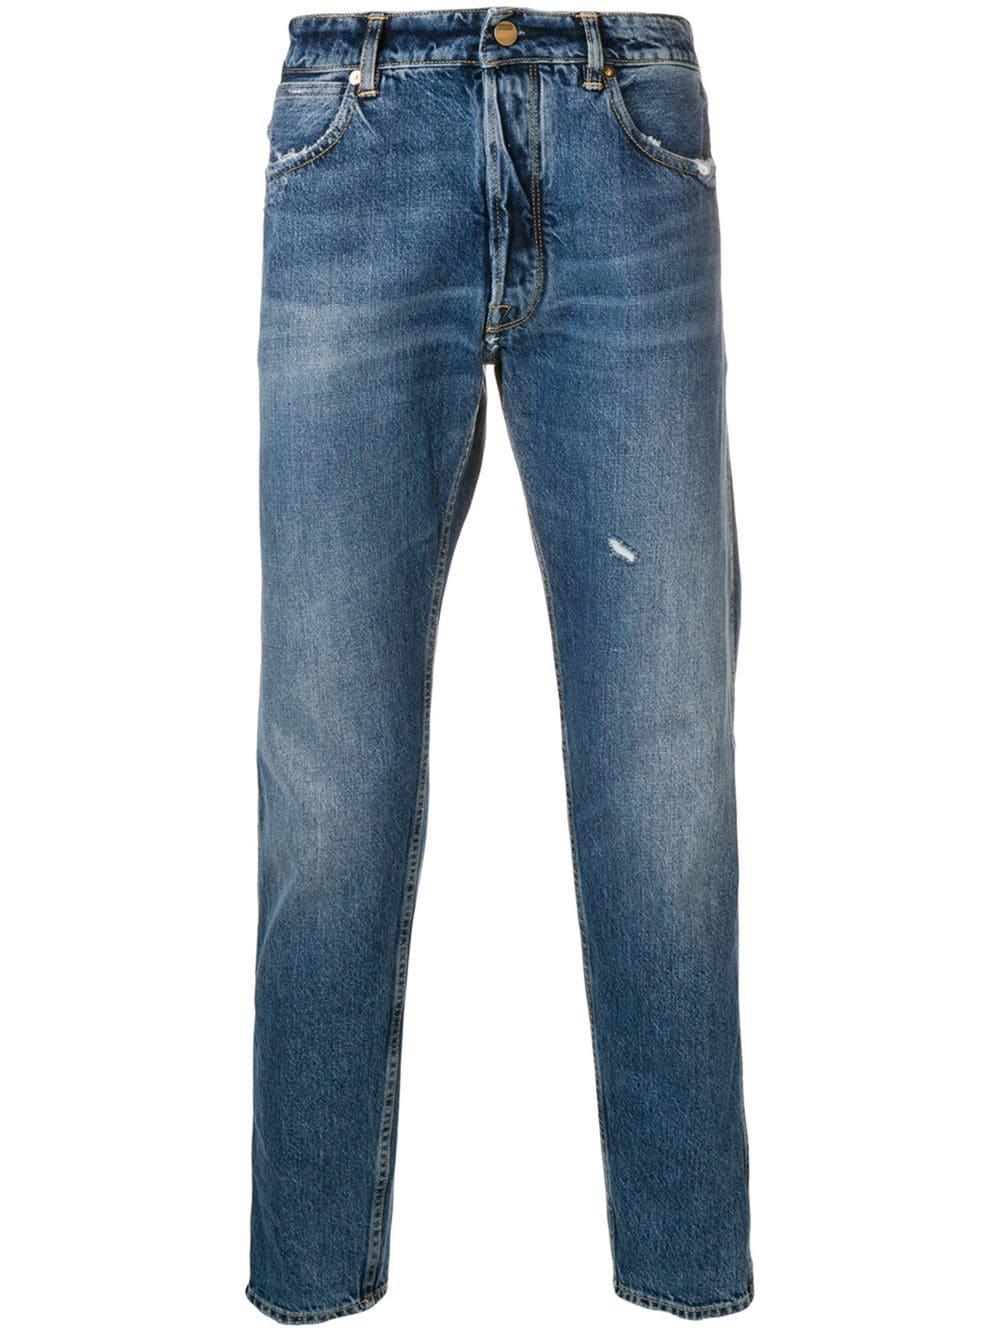 Golden Goose Deluxe Brand Denim Slim Jeans in Blue for Men - Lyst